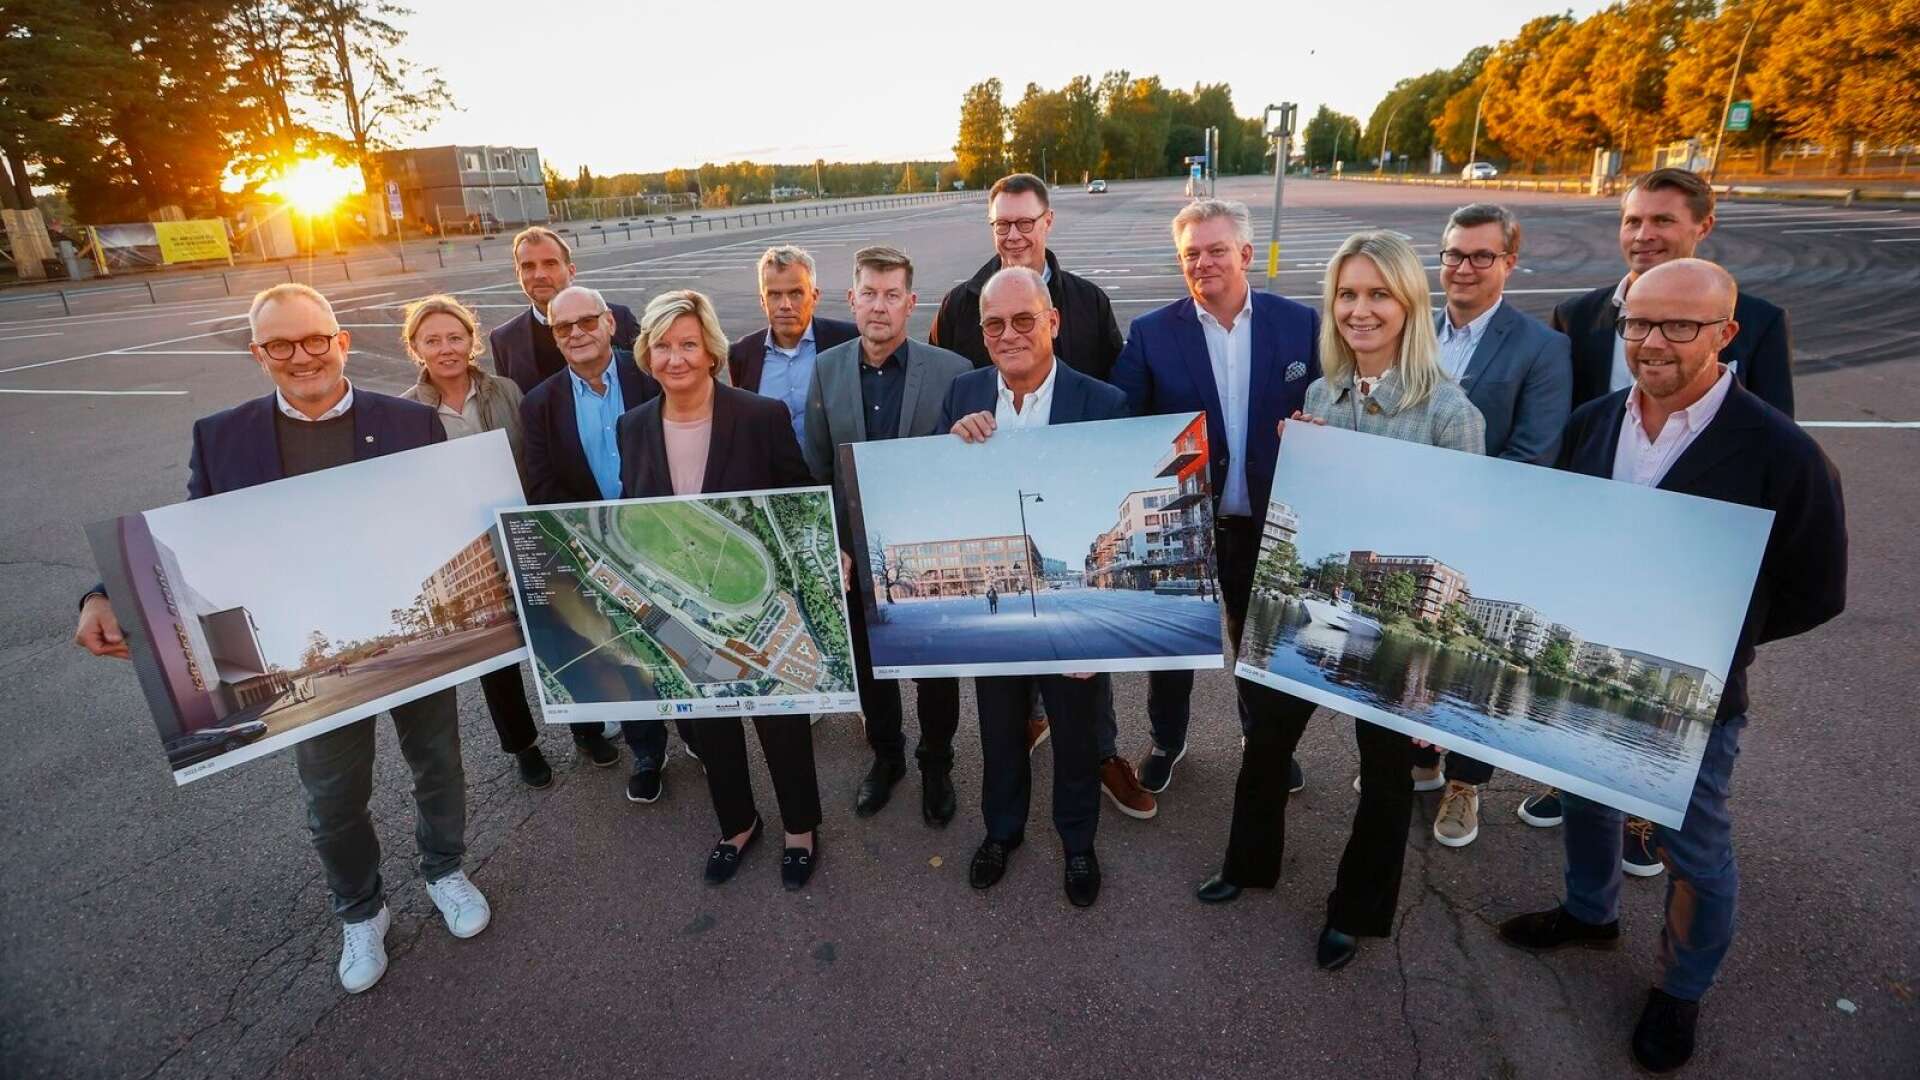 Åtta bolag i Karlstad har gått samman i en unik satsning för att skapa ett helt nytt område på Färjestad med bland annat 700-800 nya bostäder, ett stadsdelscentrum med butiker och service, ett stort parkeringshus och en ny multiarena. Det är på dagens p-platsytor runt Löfbergs arena som detta ska byggas.